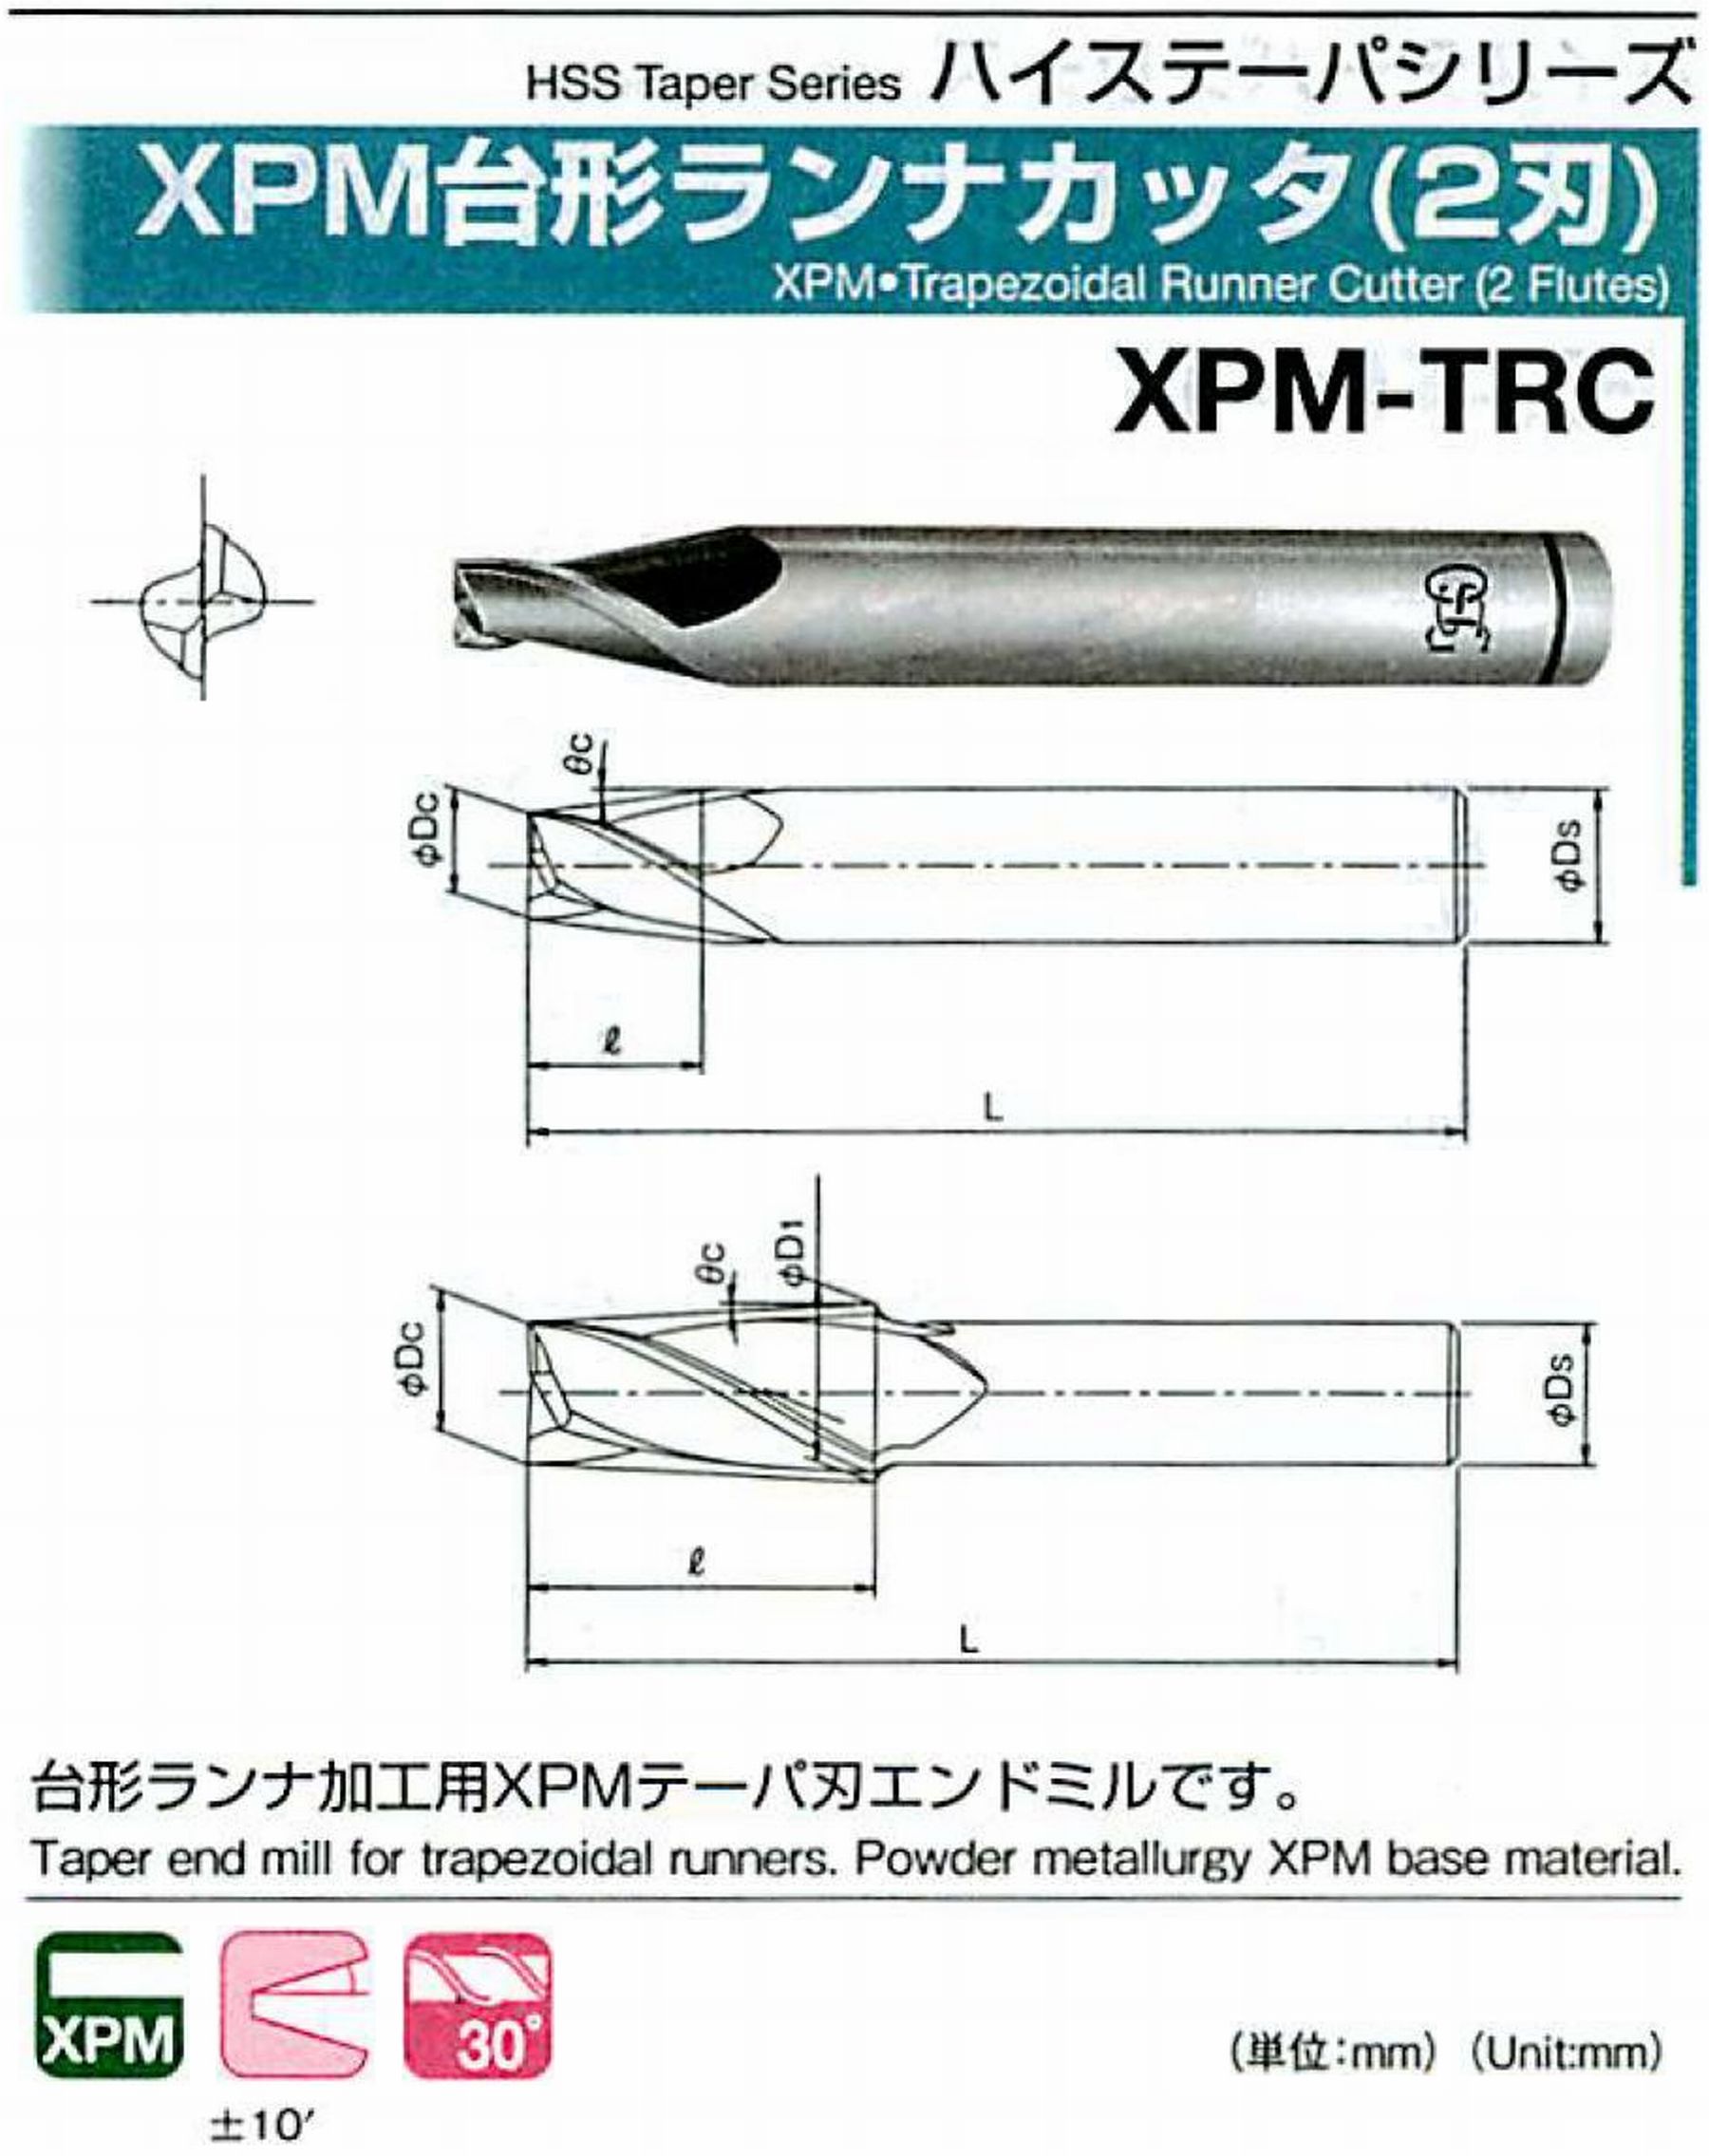 オーエスジー/OSG XPM台形ランナカッタ(2刃) XPM-TRC 外径×刃部テーパ半角3.5×15° 全長60 刃長7 シャンク径8mm